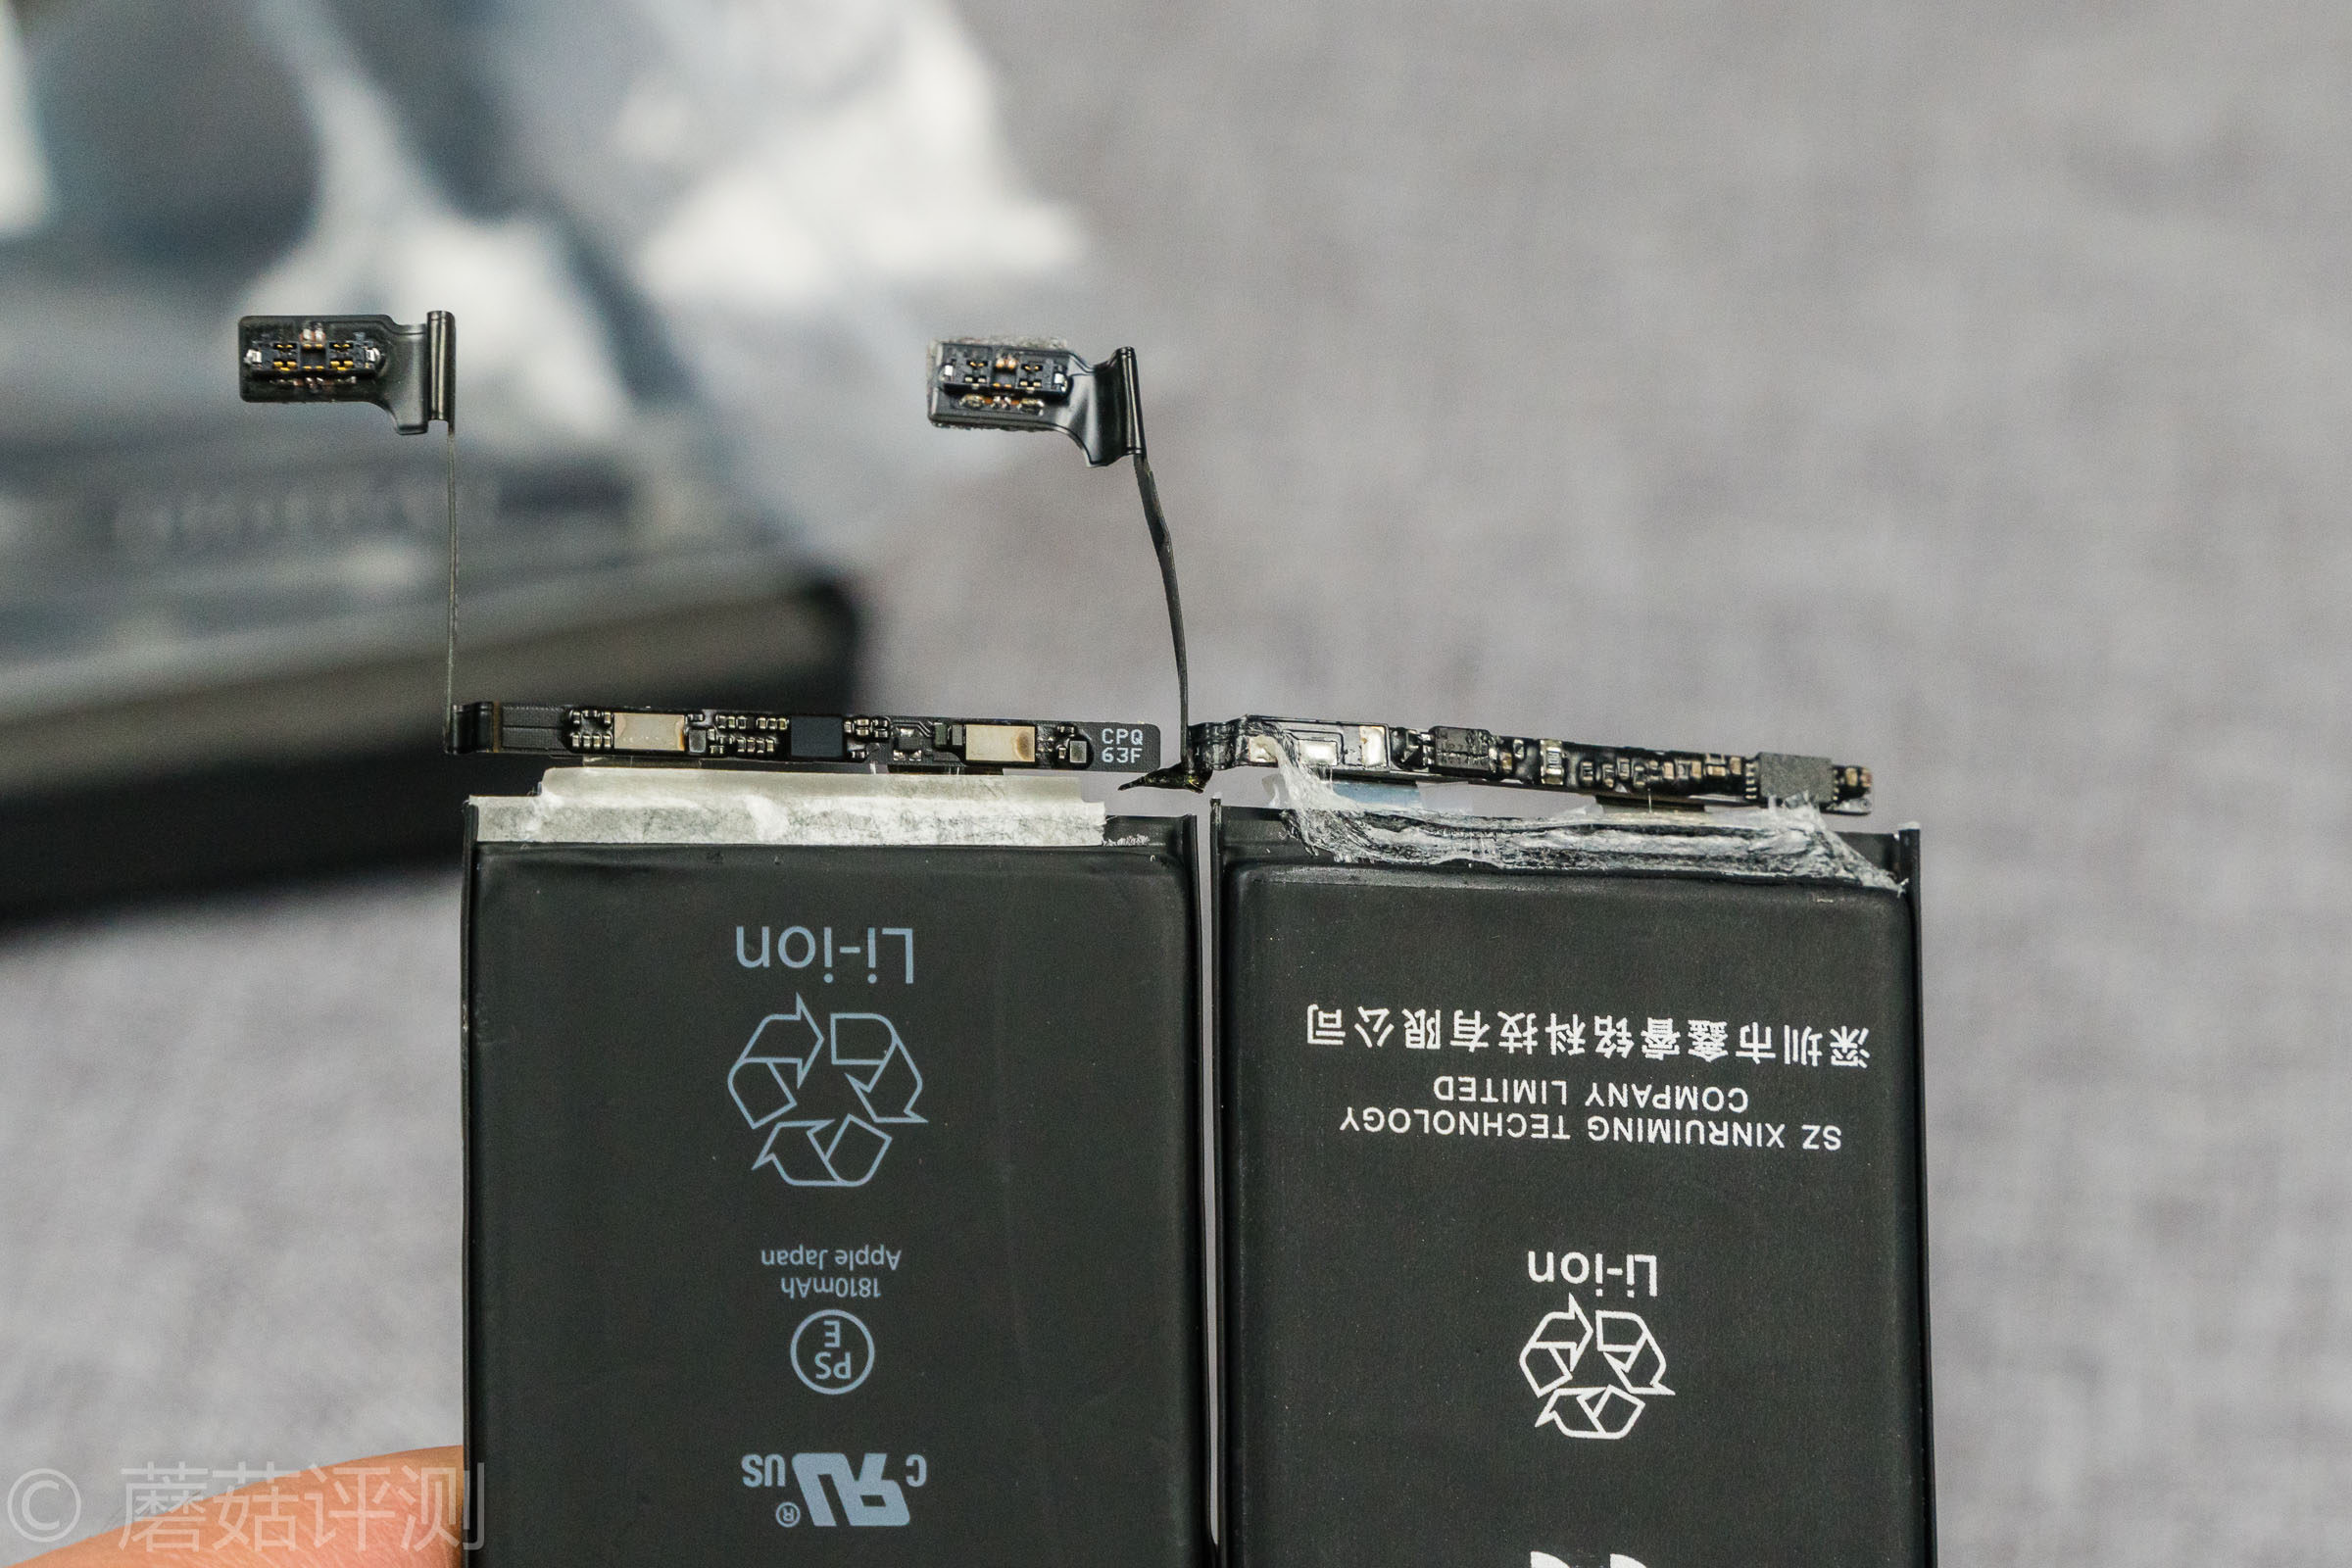 厂家直销批发oppo029手机电池 大容量3.8v锂电池,厂家直销批发oppo029手机电池 大容量3.8v锂电池价格,厂家直销批发 ...